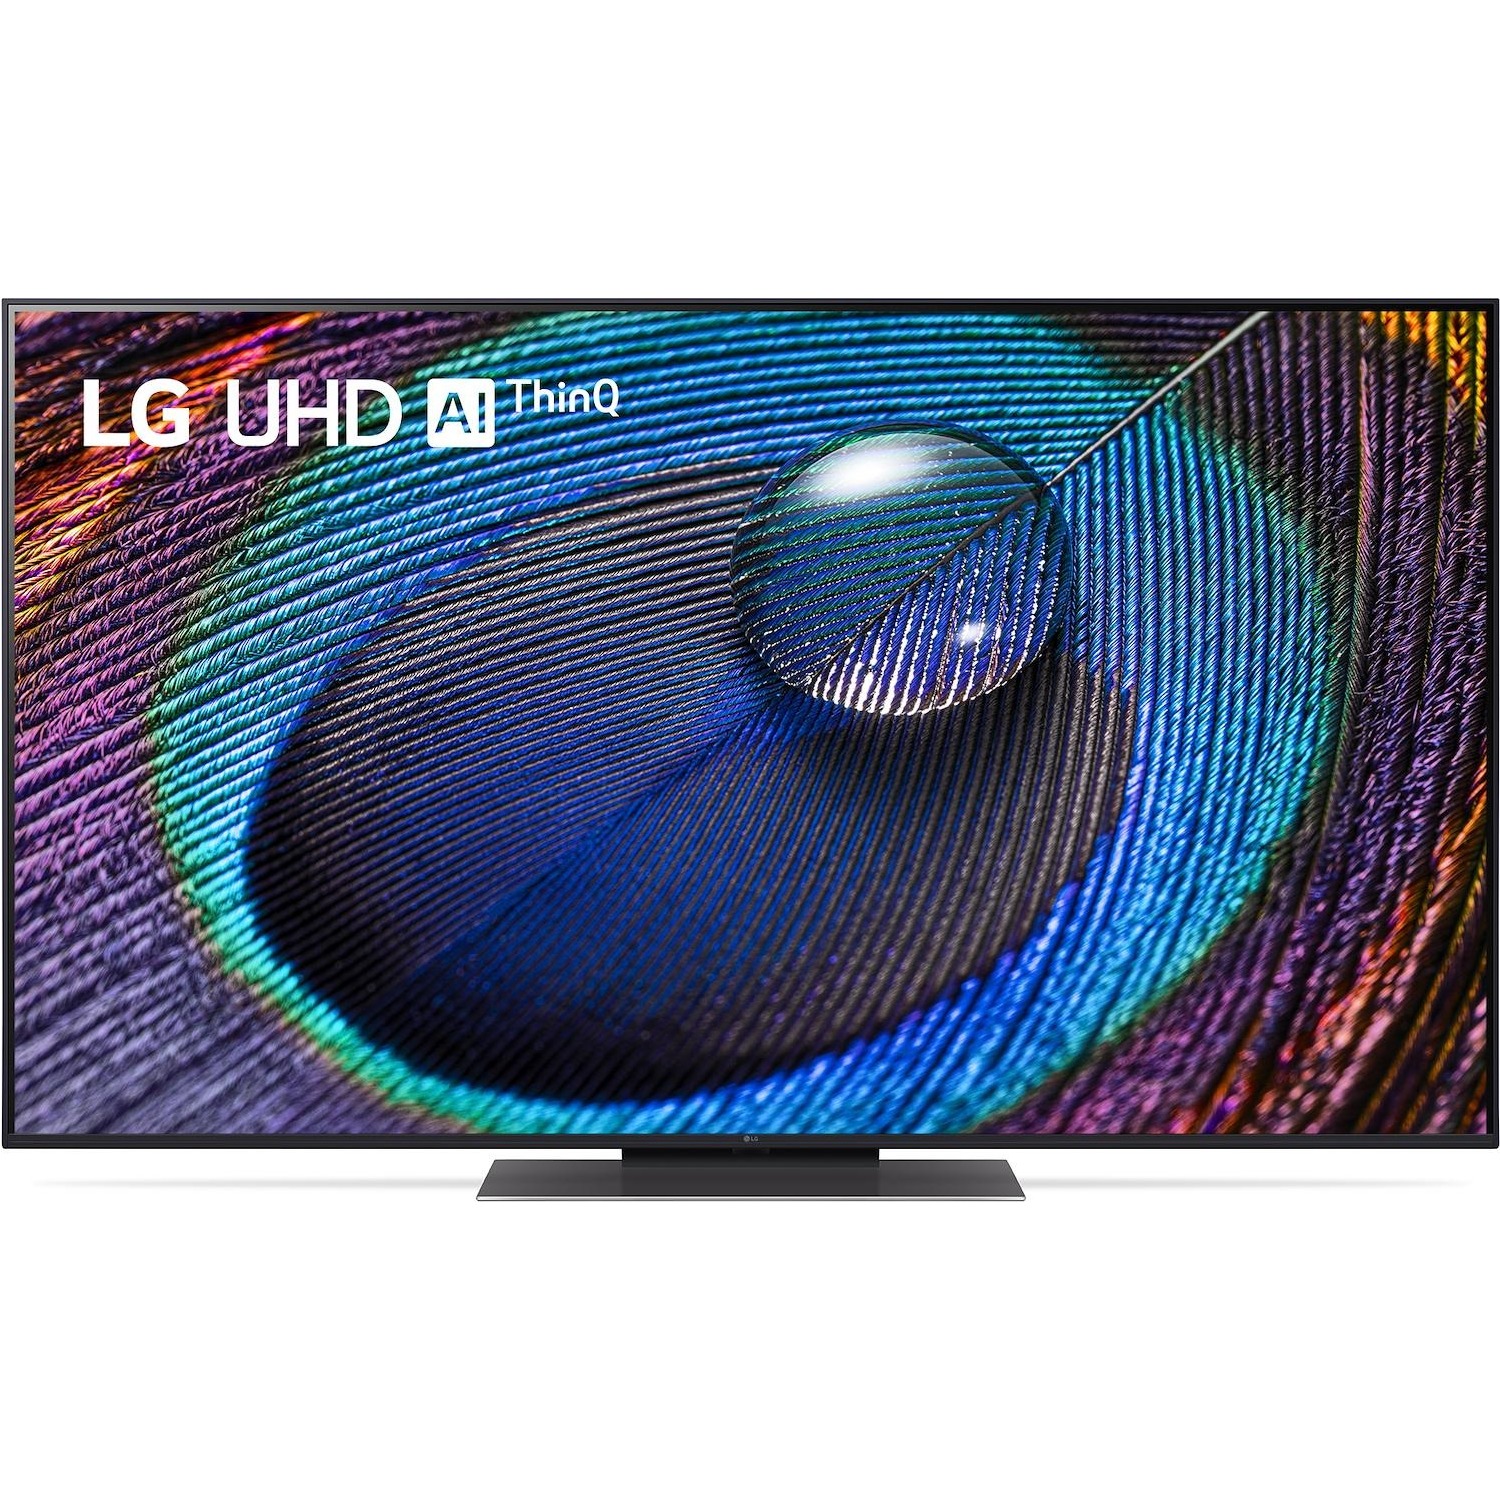 Immagine per TV LED LG 55UR91006 Smart 4K Ultra HD da DIMOStore